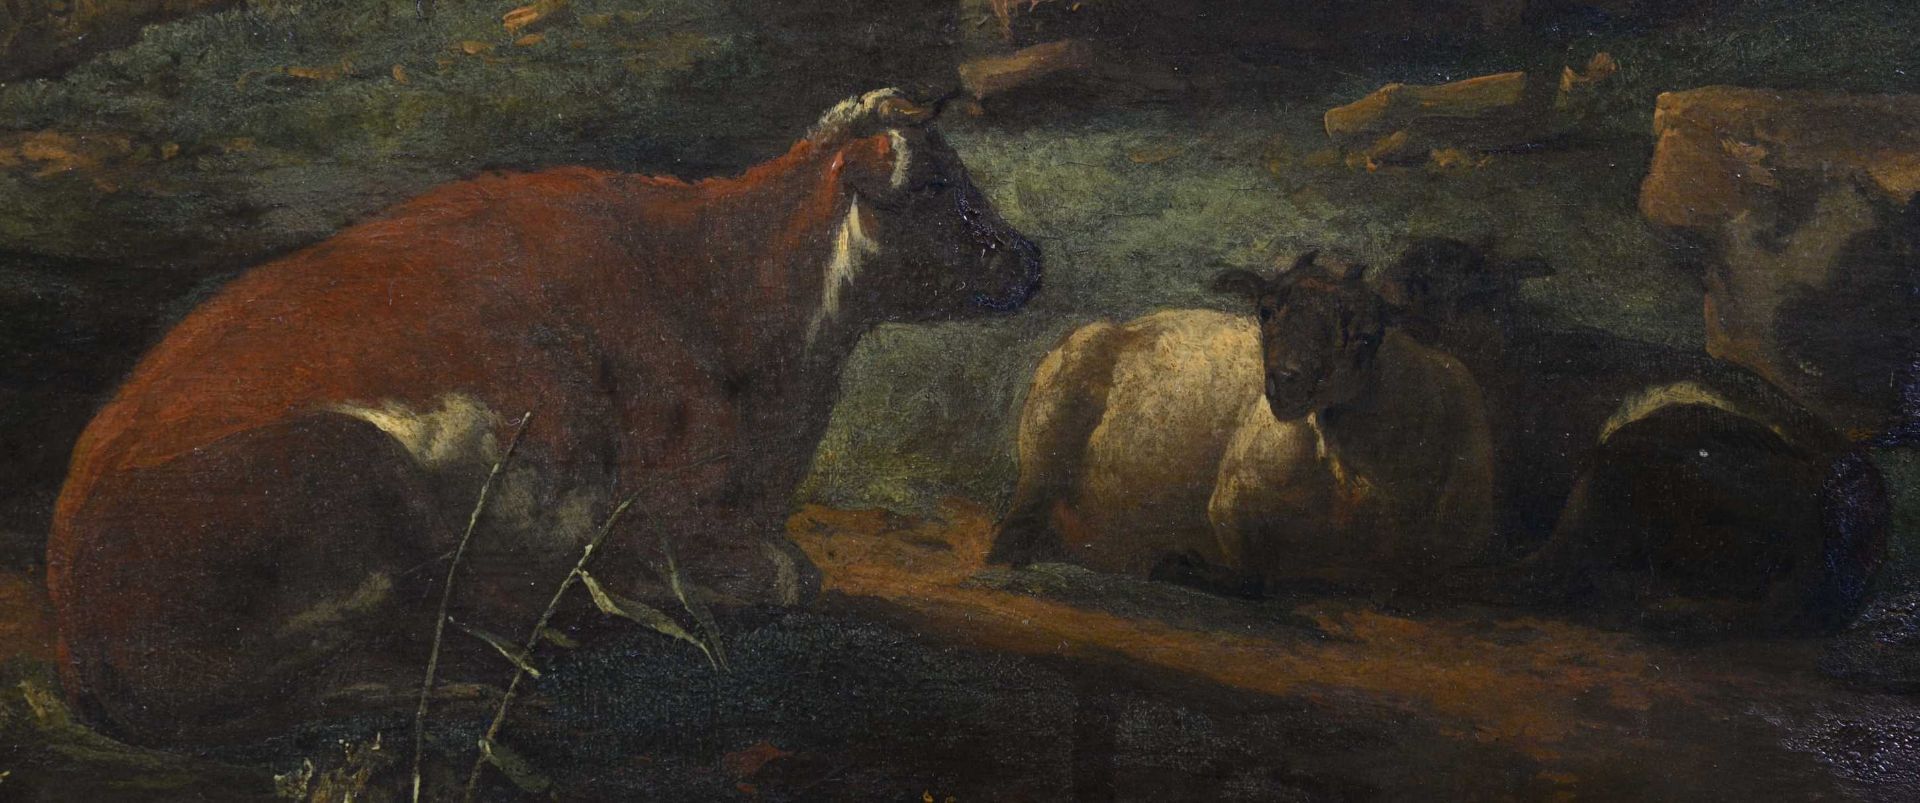 PIJNACKER, ADAMSchiedam 1620/22 - 1673 AmsterdamIdyllische Landschaft mit Viehherde.Öl auf Holz,sig. - Bild 5 aus 6